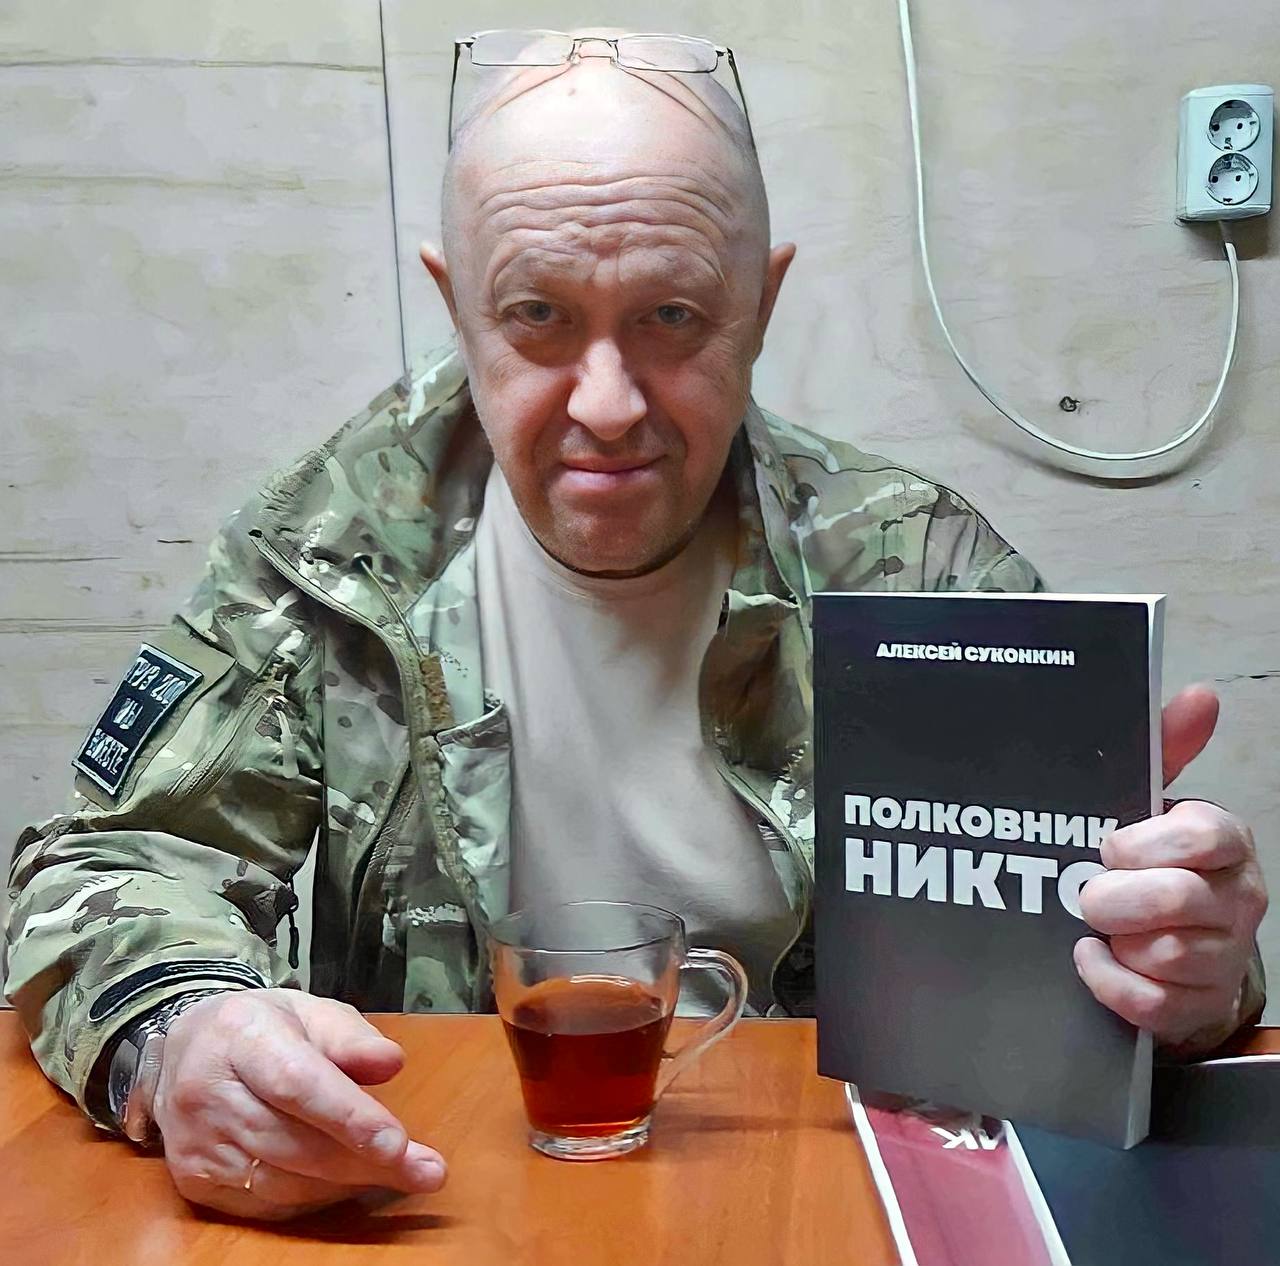 Полковнику никто суконкин купить книгу. Глава ЧВК Вагнер Пригожин.